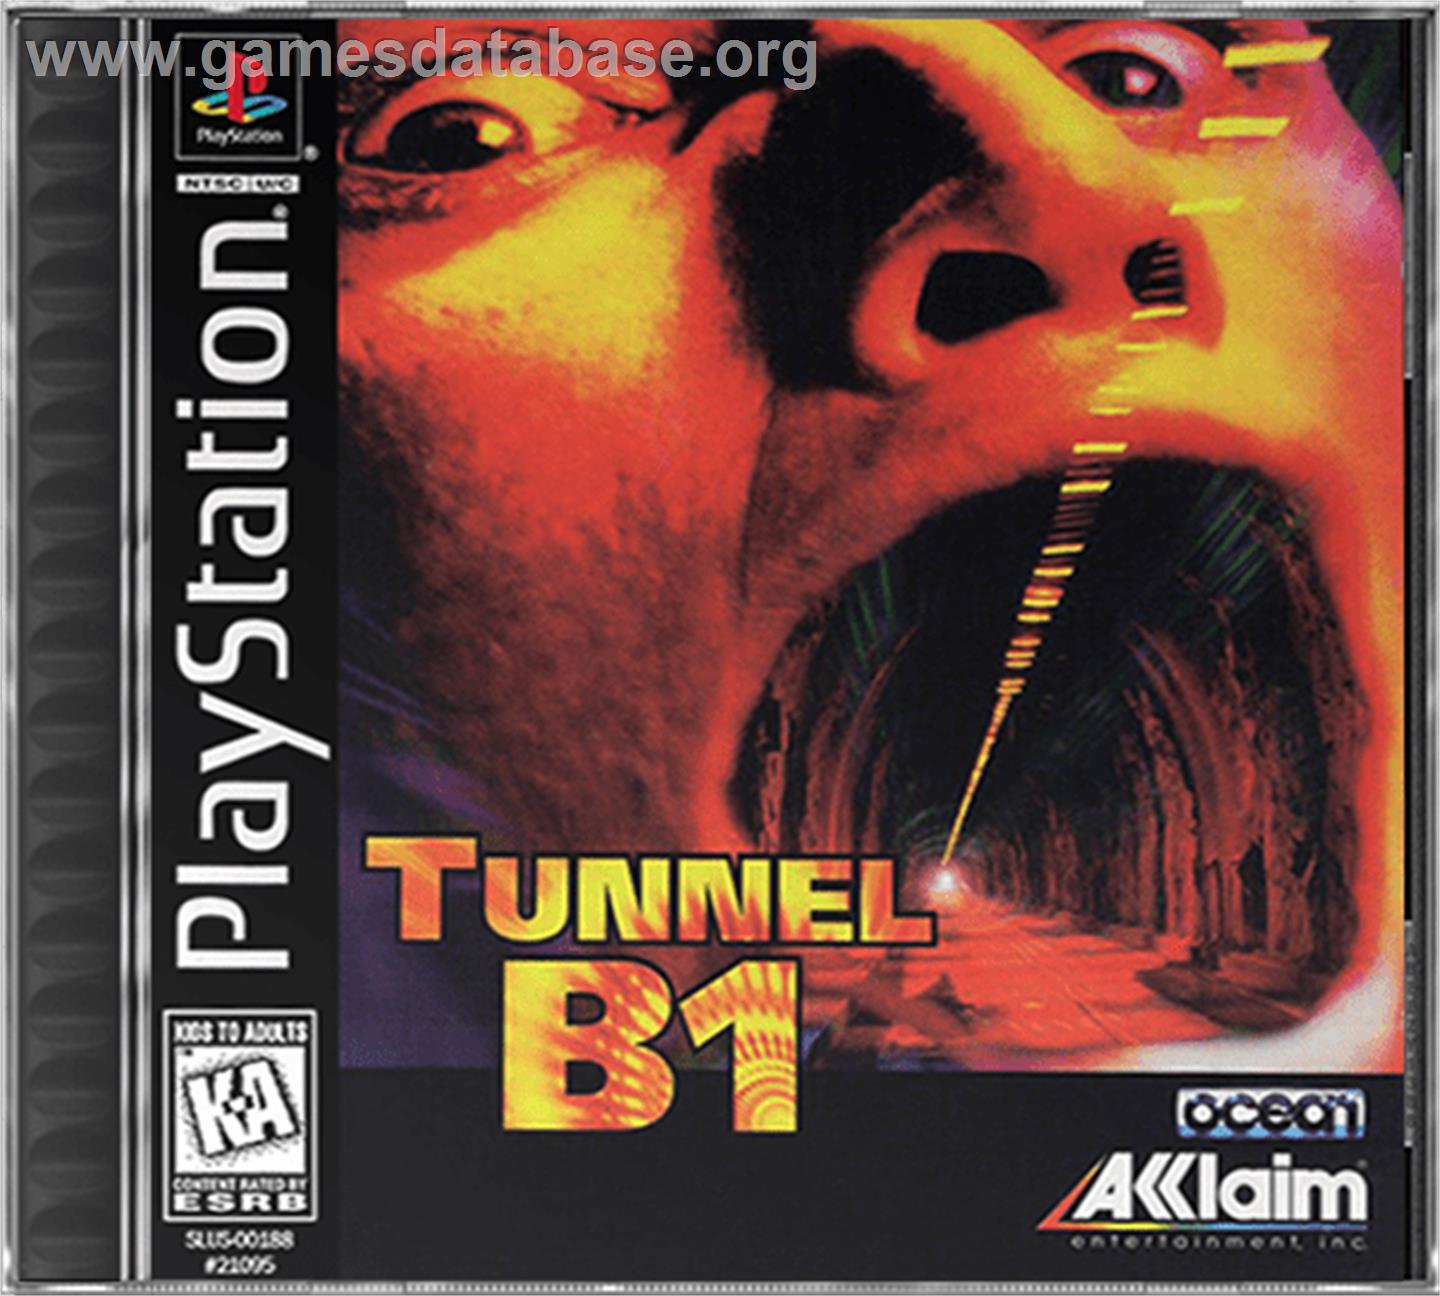 Tunnel B1 - Sony Playstation - Artwork - Box